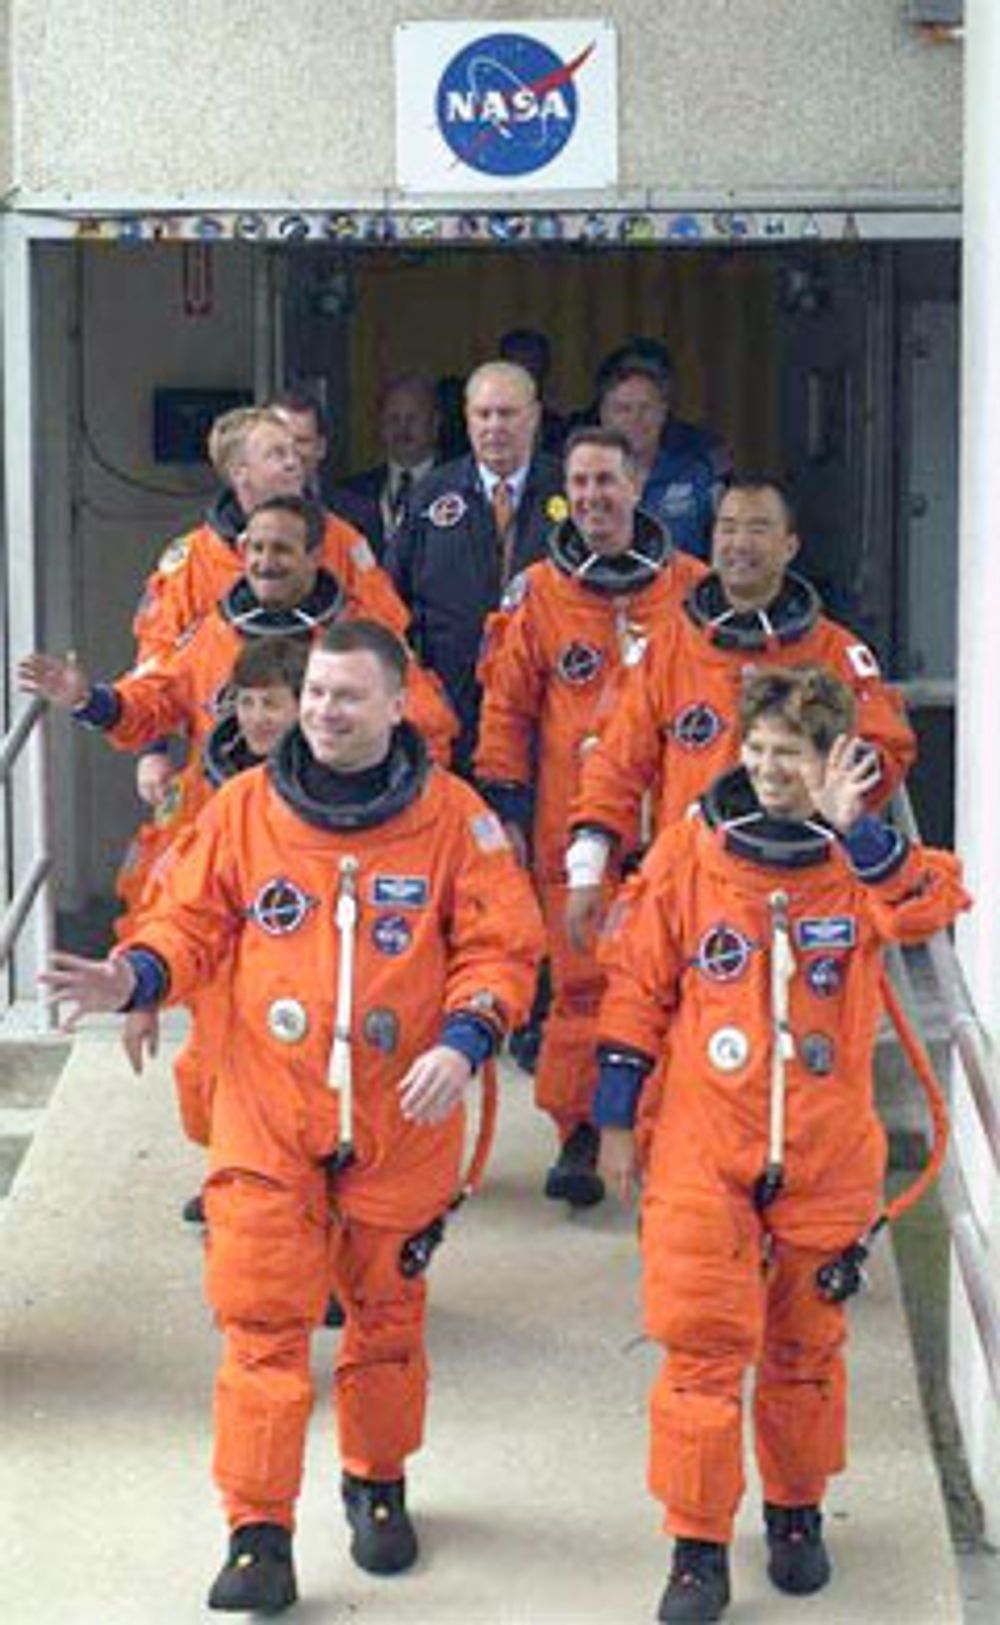 Fartøysjef Eileen Collins (foran t.h.) og resten av mannskapet håper å kunne ta av mot romstasjonen ISS på tirsdag. Foto: NASA